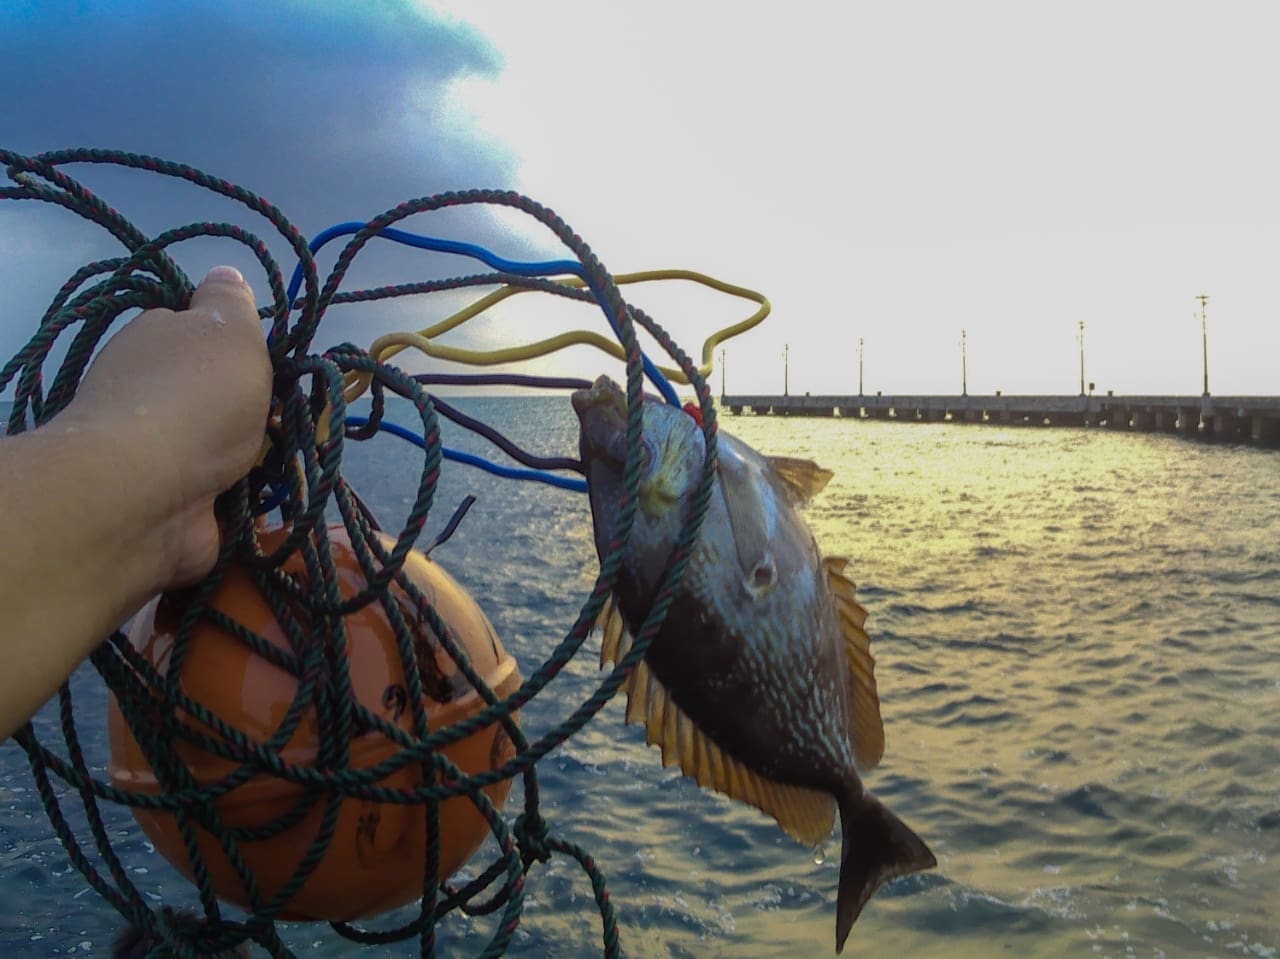 Ikan hasil tangkapan dengan spearfishing